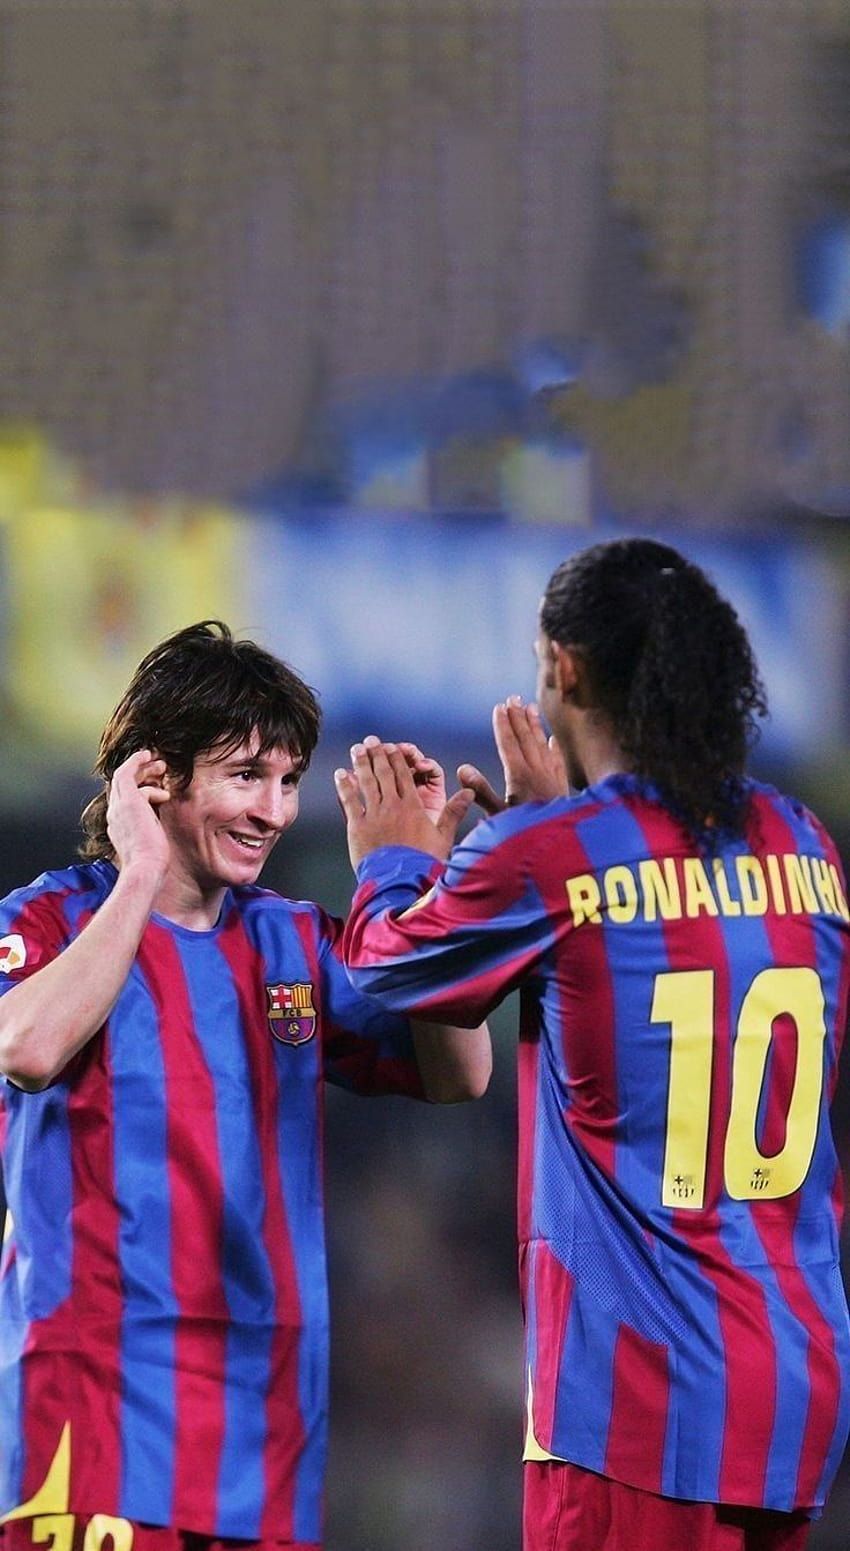 Đây là hình ảnh của một trong những cầu thủ xuất sắc nhất thế giới - Lionel Messi. Xem hình ảnh này để chiêm ngưỡng tài năng và tinh thần đi đầu của anh ta trong sự nghiệp bóng đá.